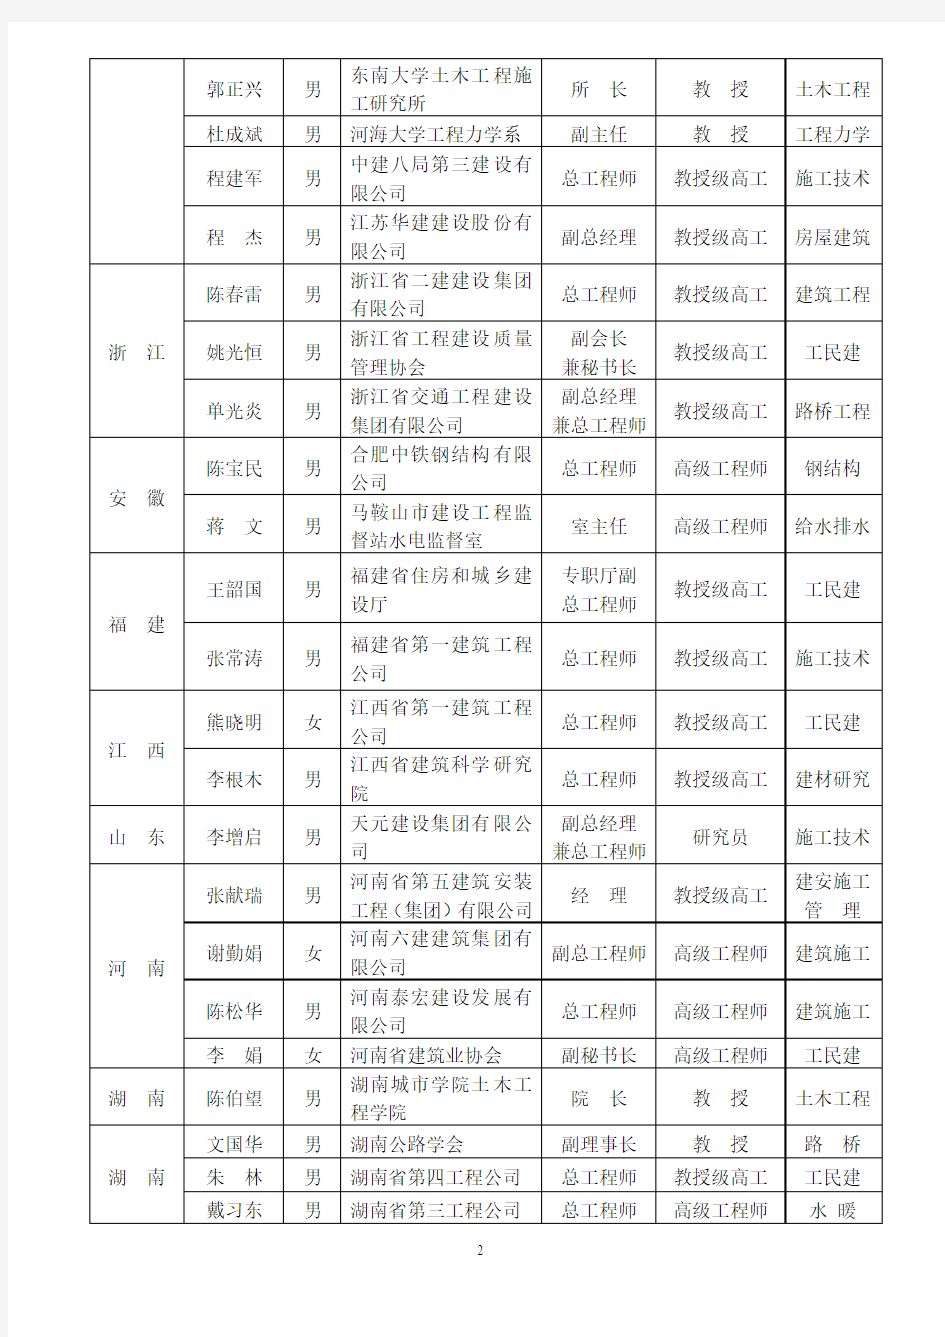 中国建筑业协会专家委员会第三批专家委员名单